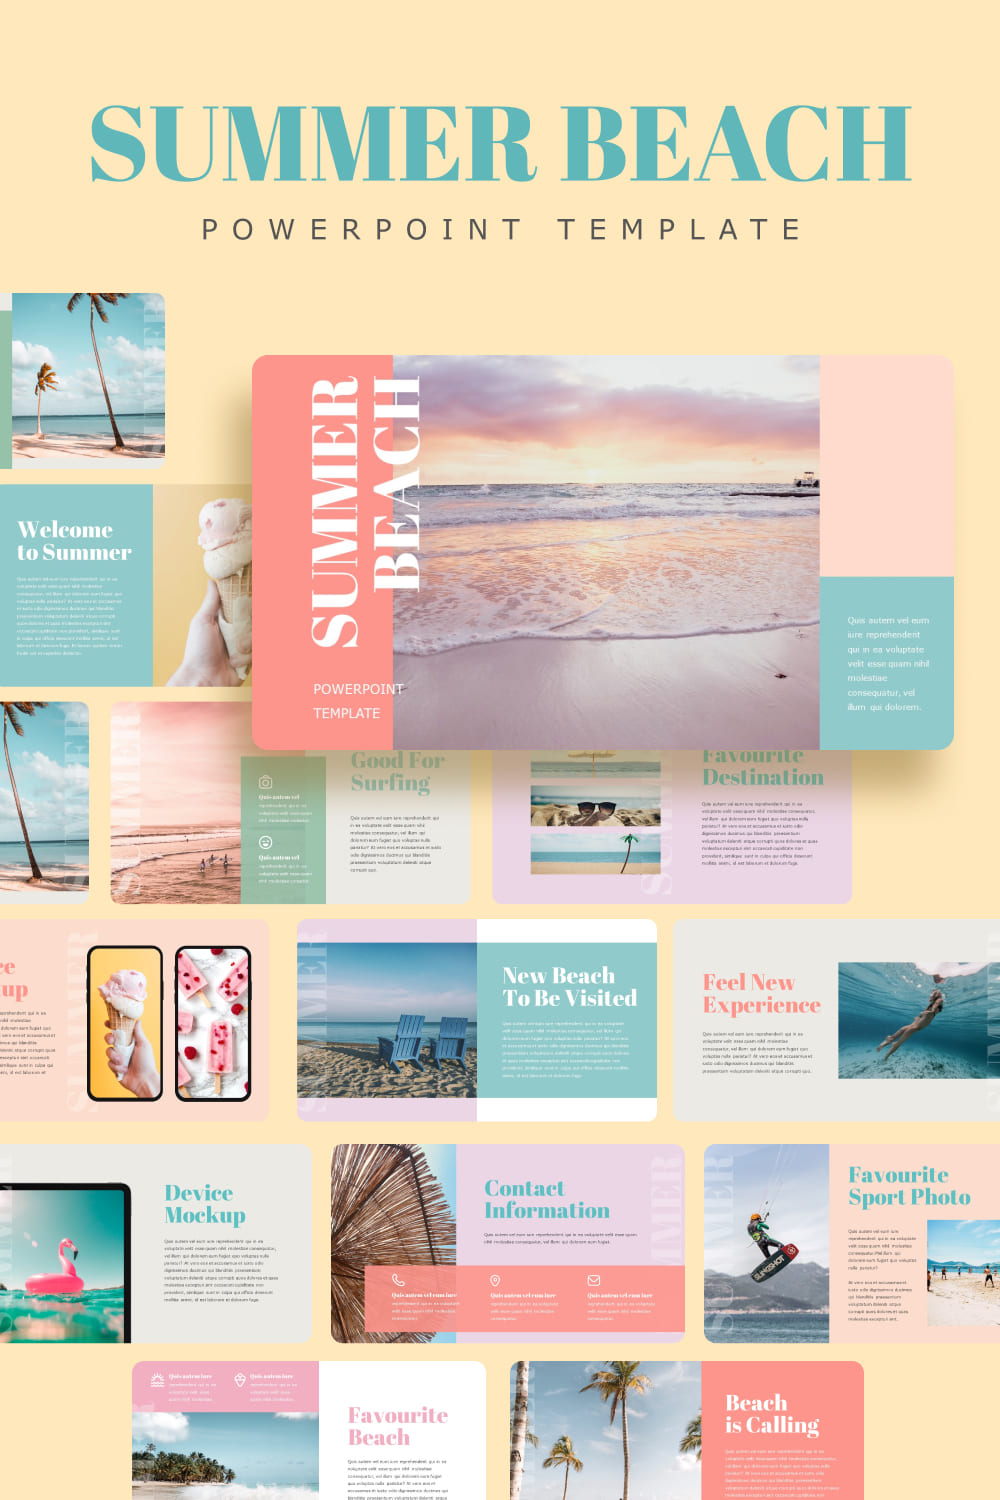 Summer Beach Powerpoint Template - Pinterest.